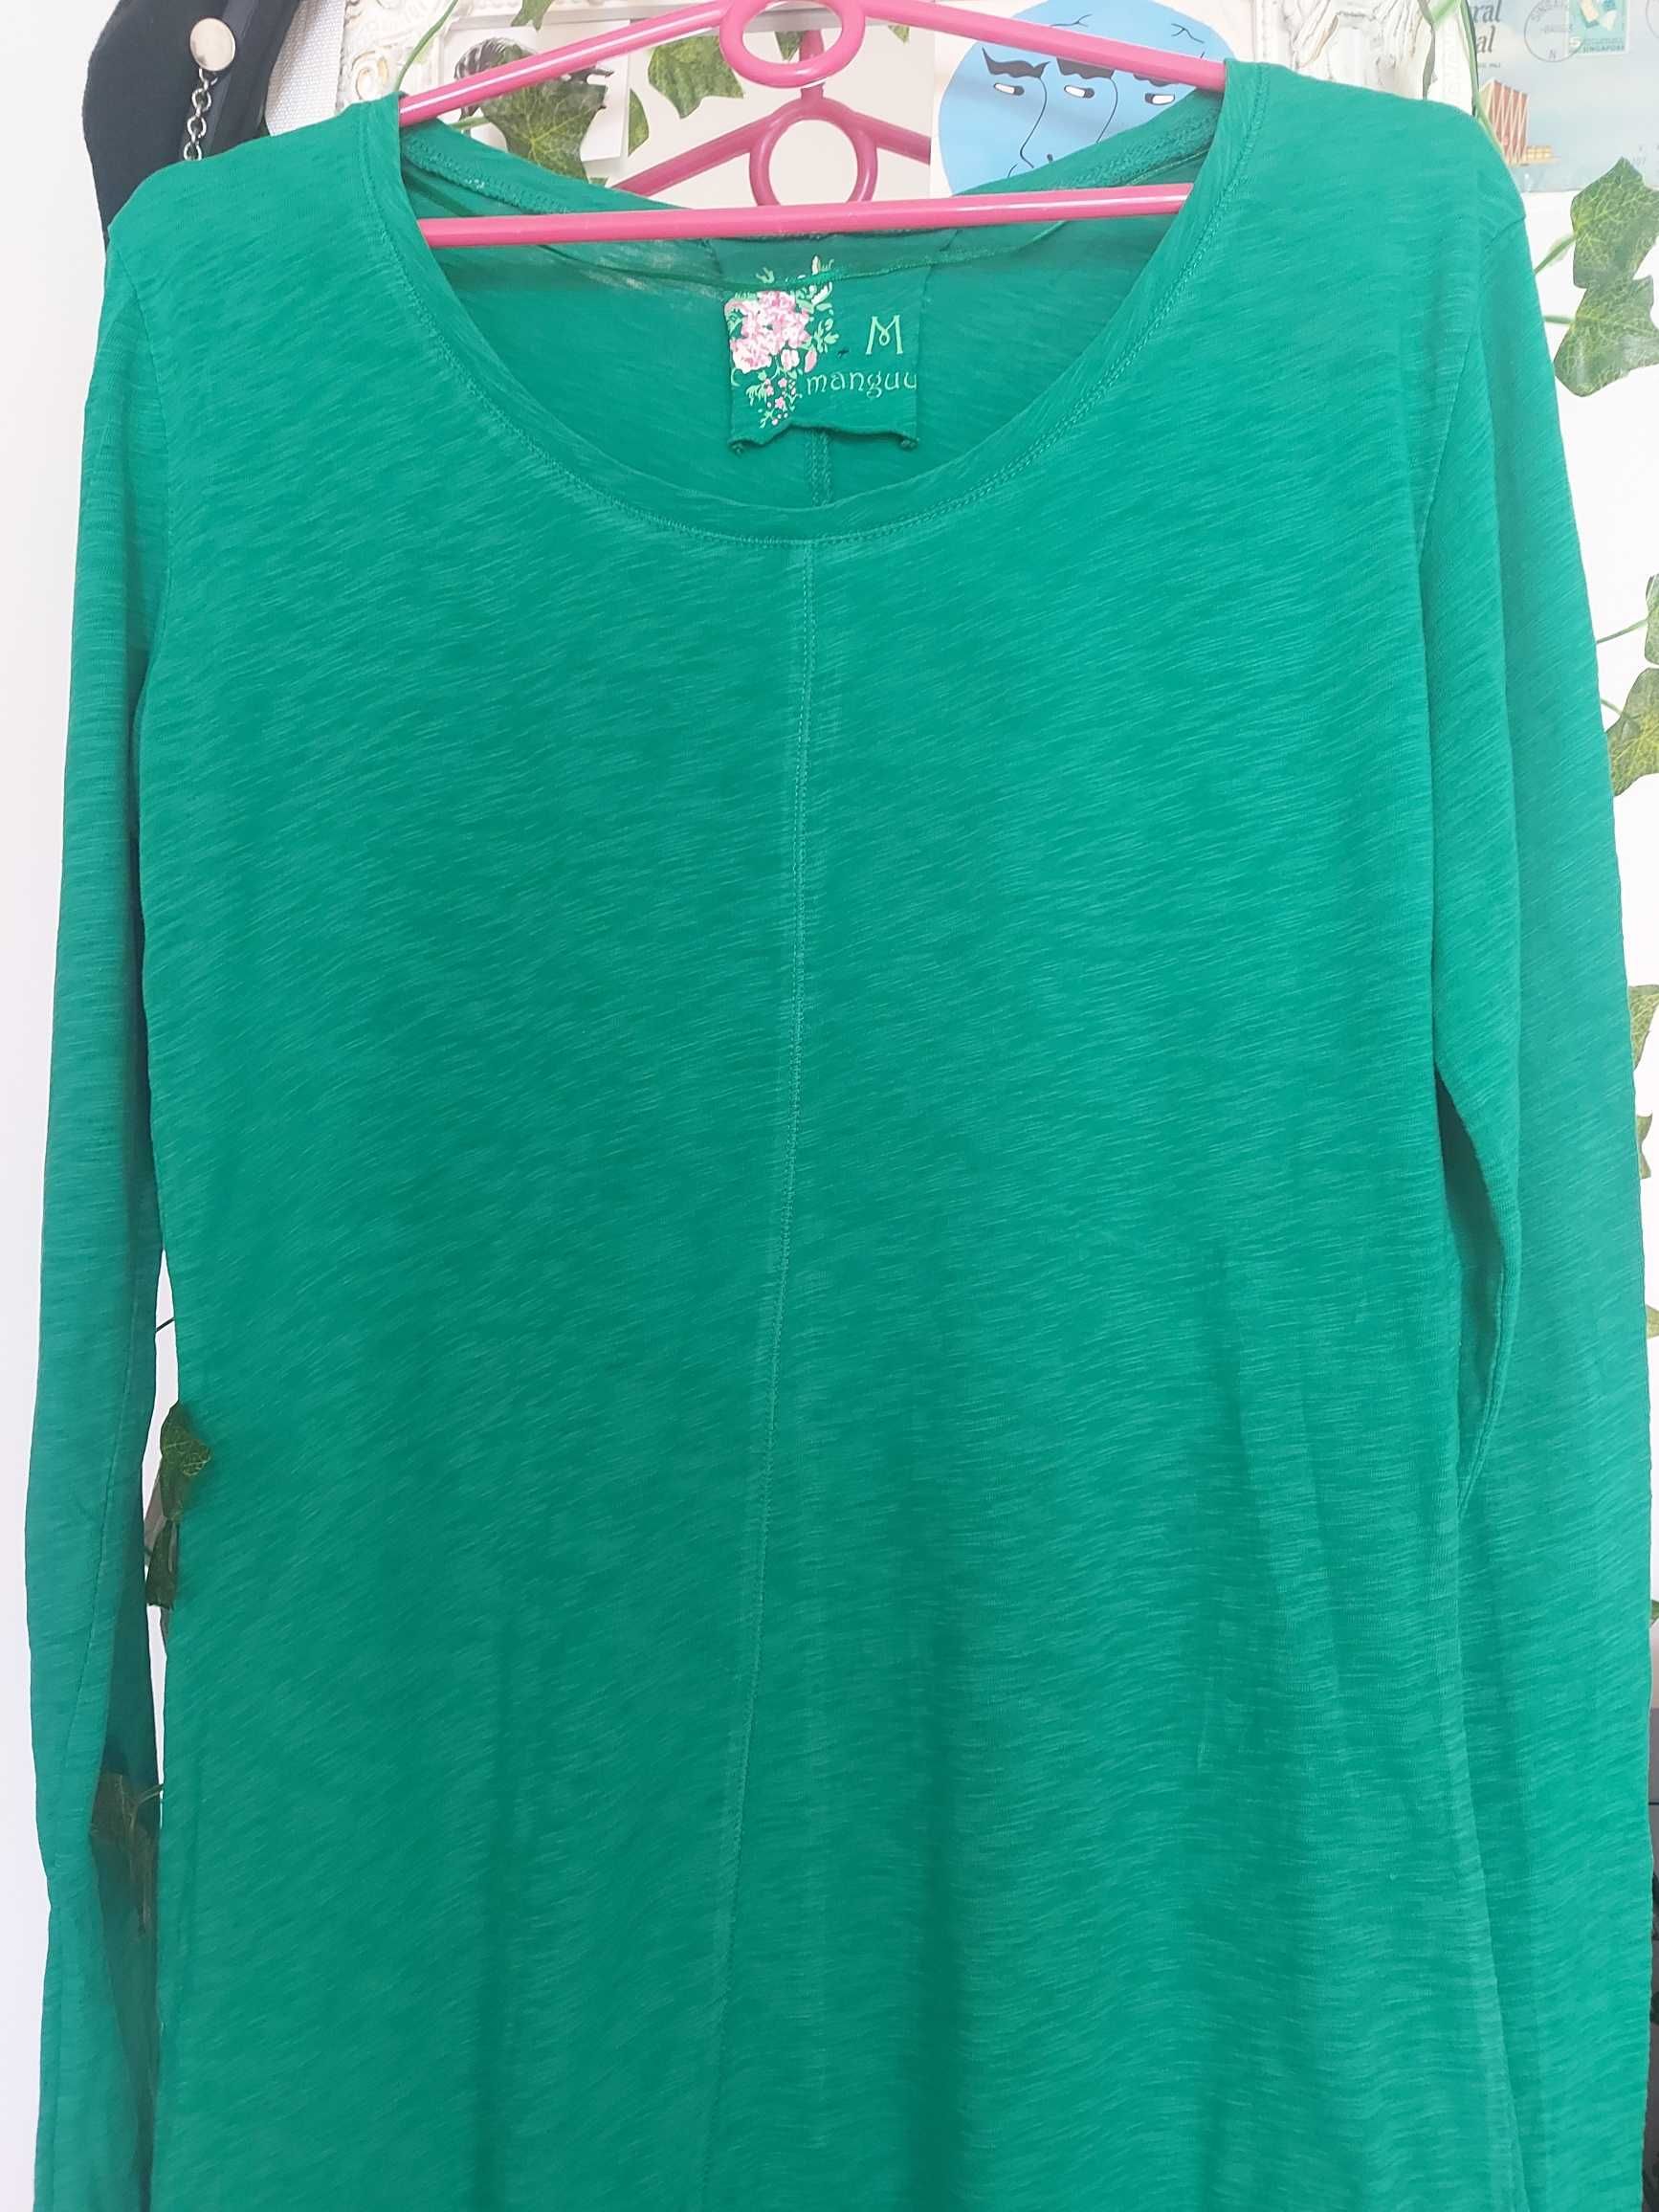 zielona bluzka tunika długa M